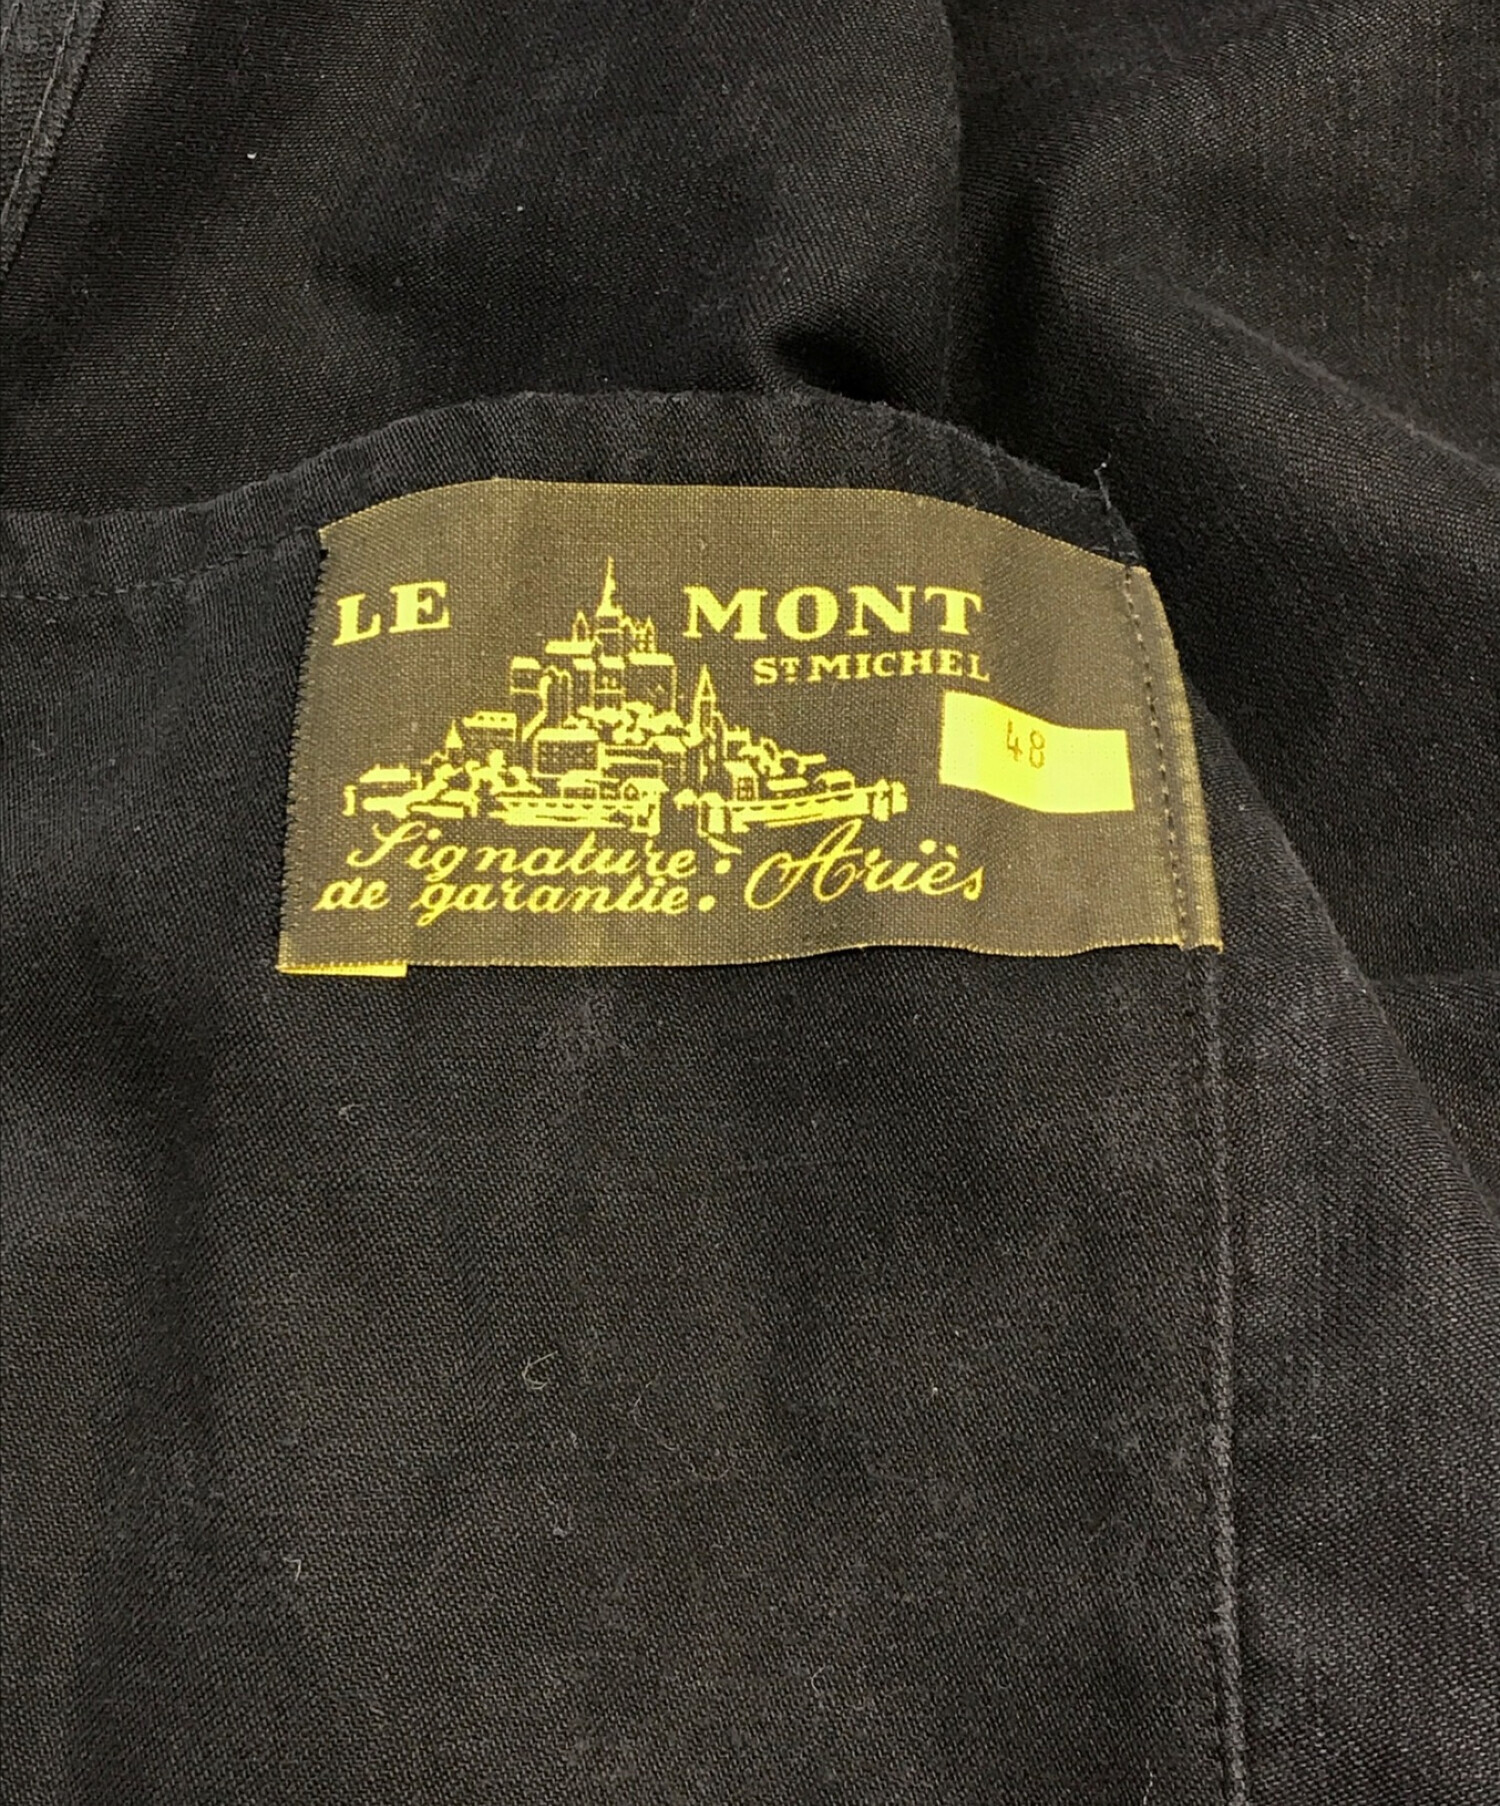 【タグ付き】Le mont st michel ブルゾン ジャケット